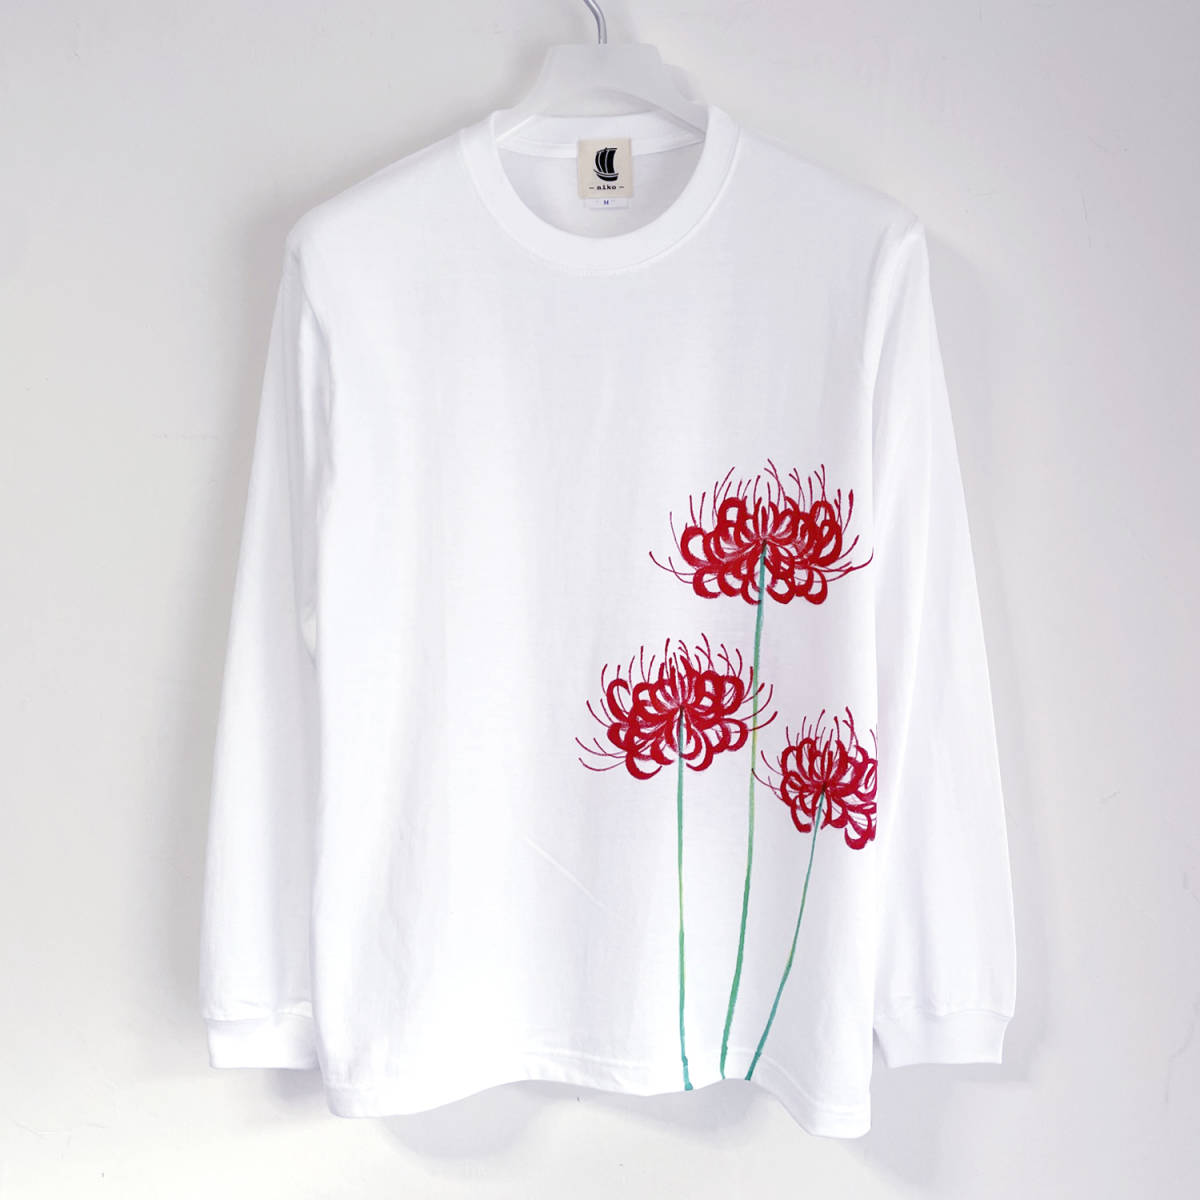 히간 플로럴 패턴 티셔츠, 화이트 S 사이즈, 골지 소매가 있는 핸드 페인팅 긴소매 티셔츠, 긴 티셔츠, 꽃무늬, 일본식 디자인, 하얀색, 티셔츠, 긴팔, S 사이즈